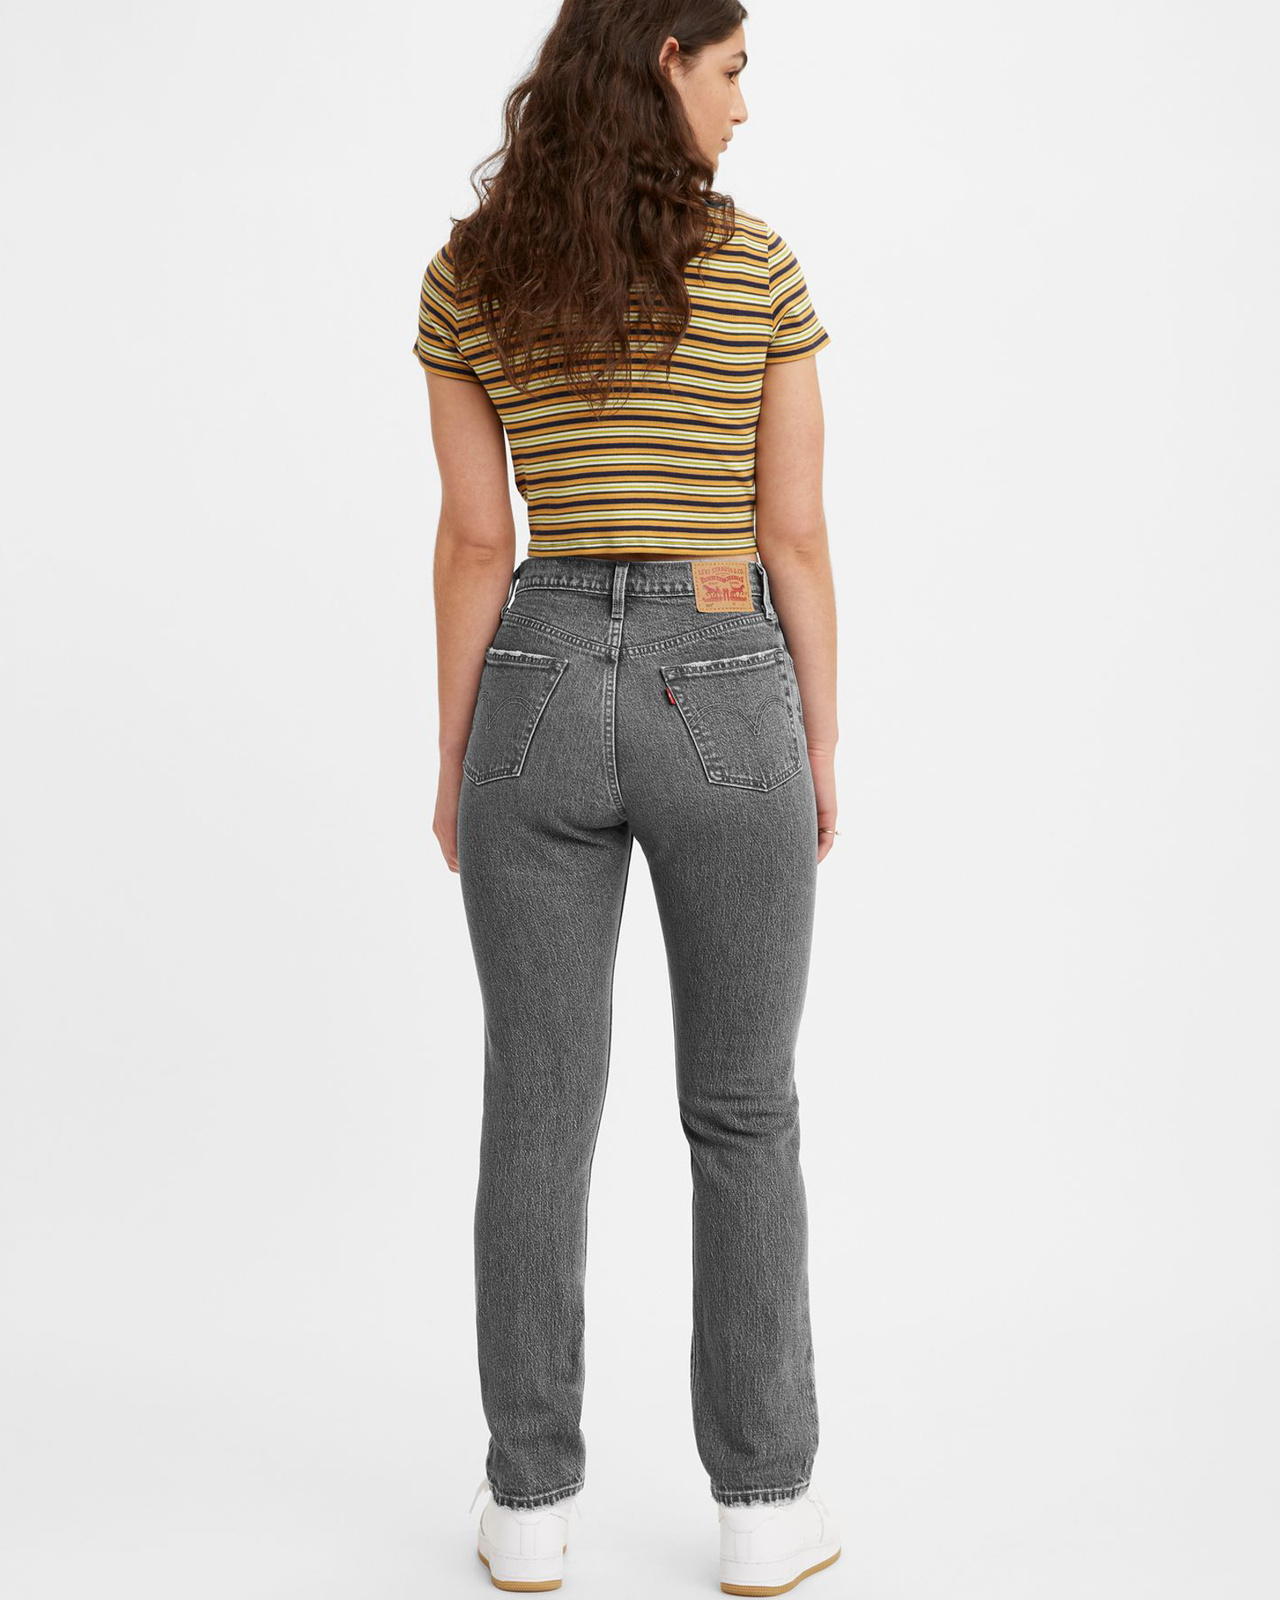 501 Jeans for Women - Swan Island - 28/32